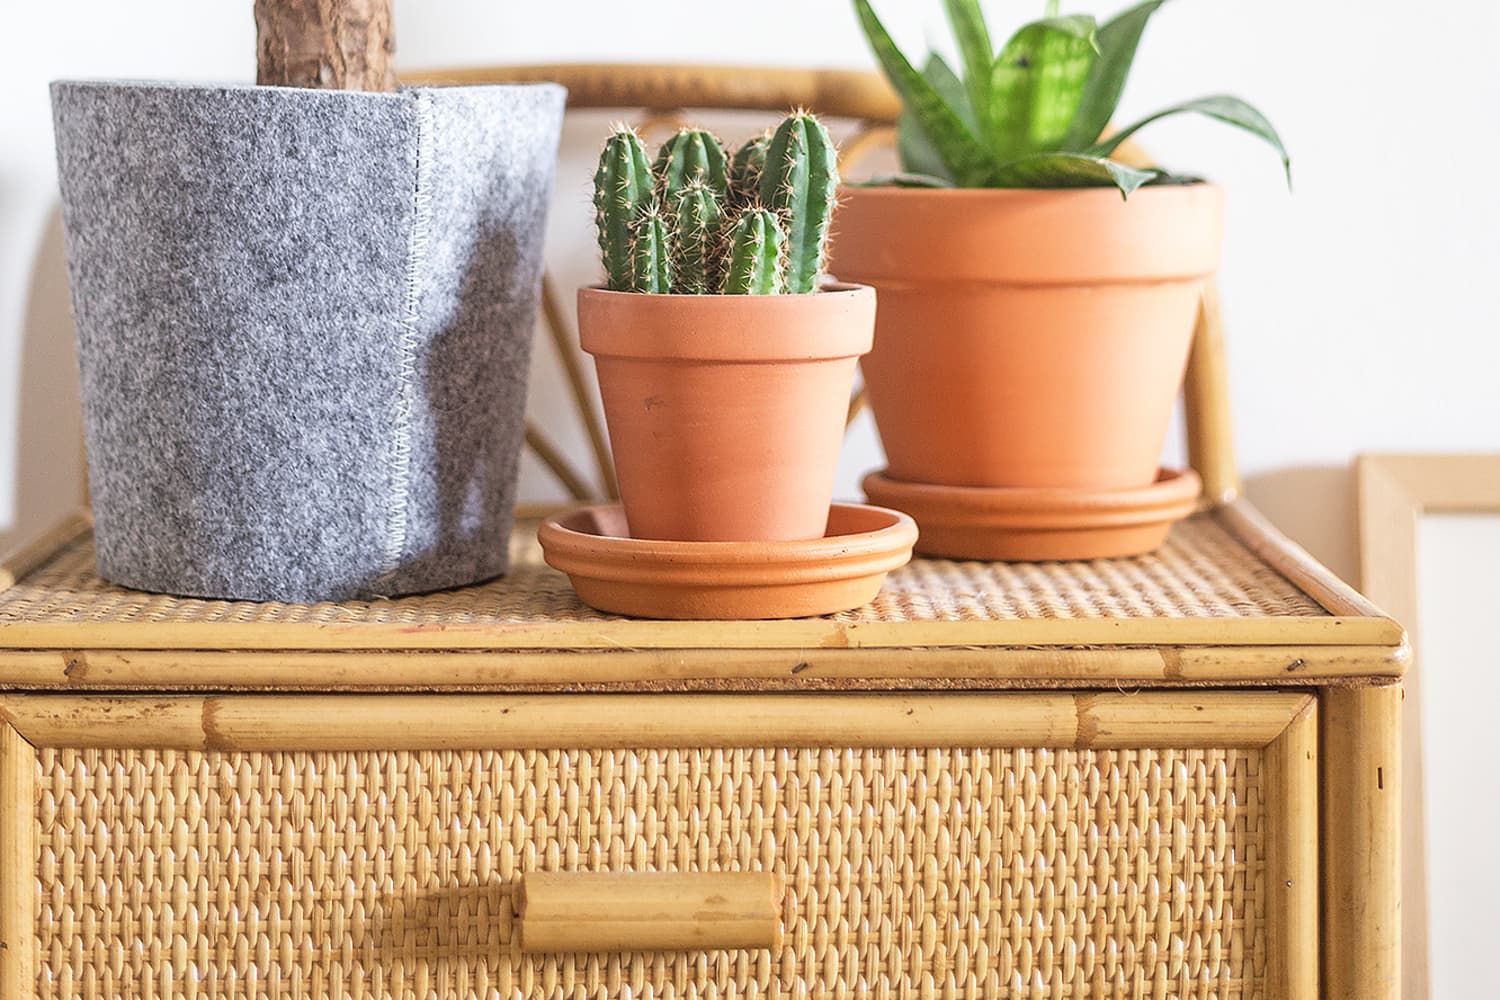 Details about   Ceramic Pot with Drainage Hole Rectangular Base Flower Pot Cactus Planter Pot 